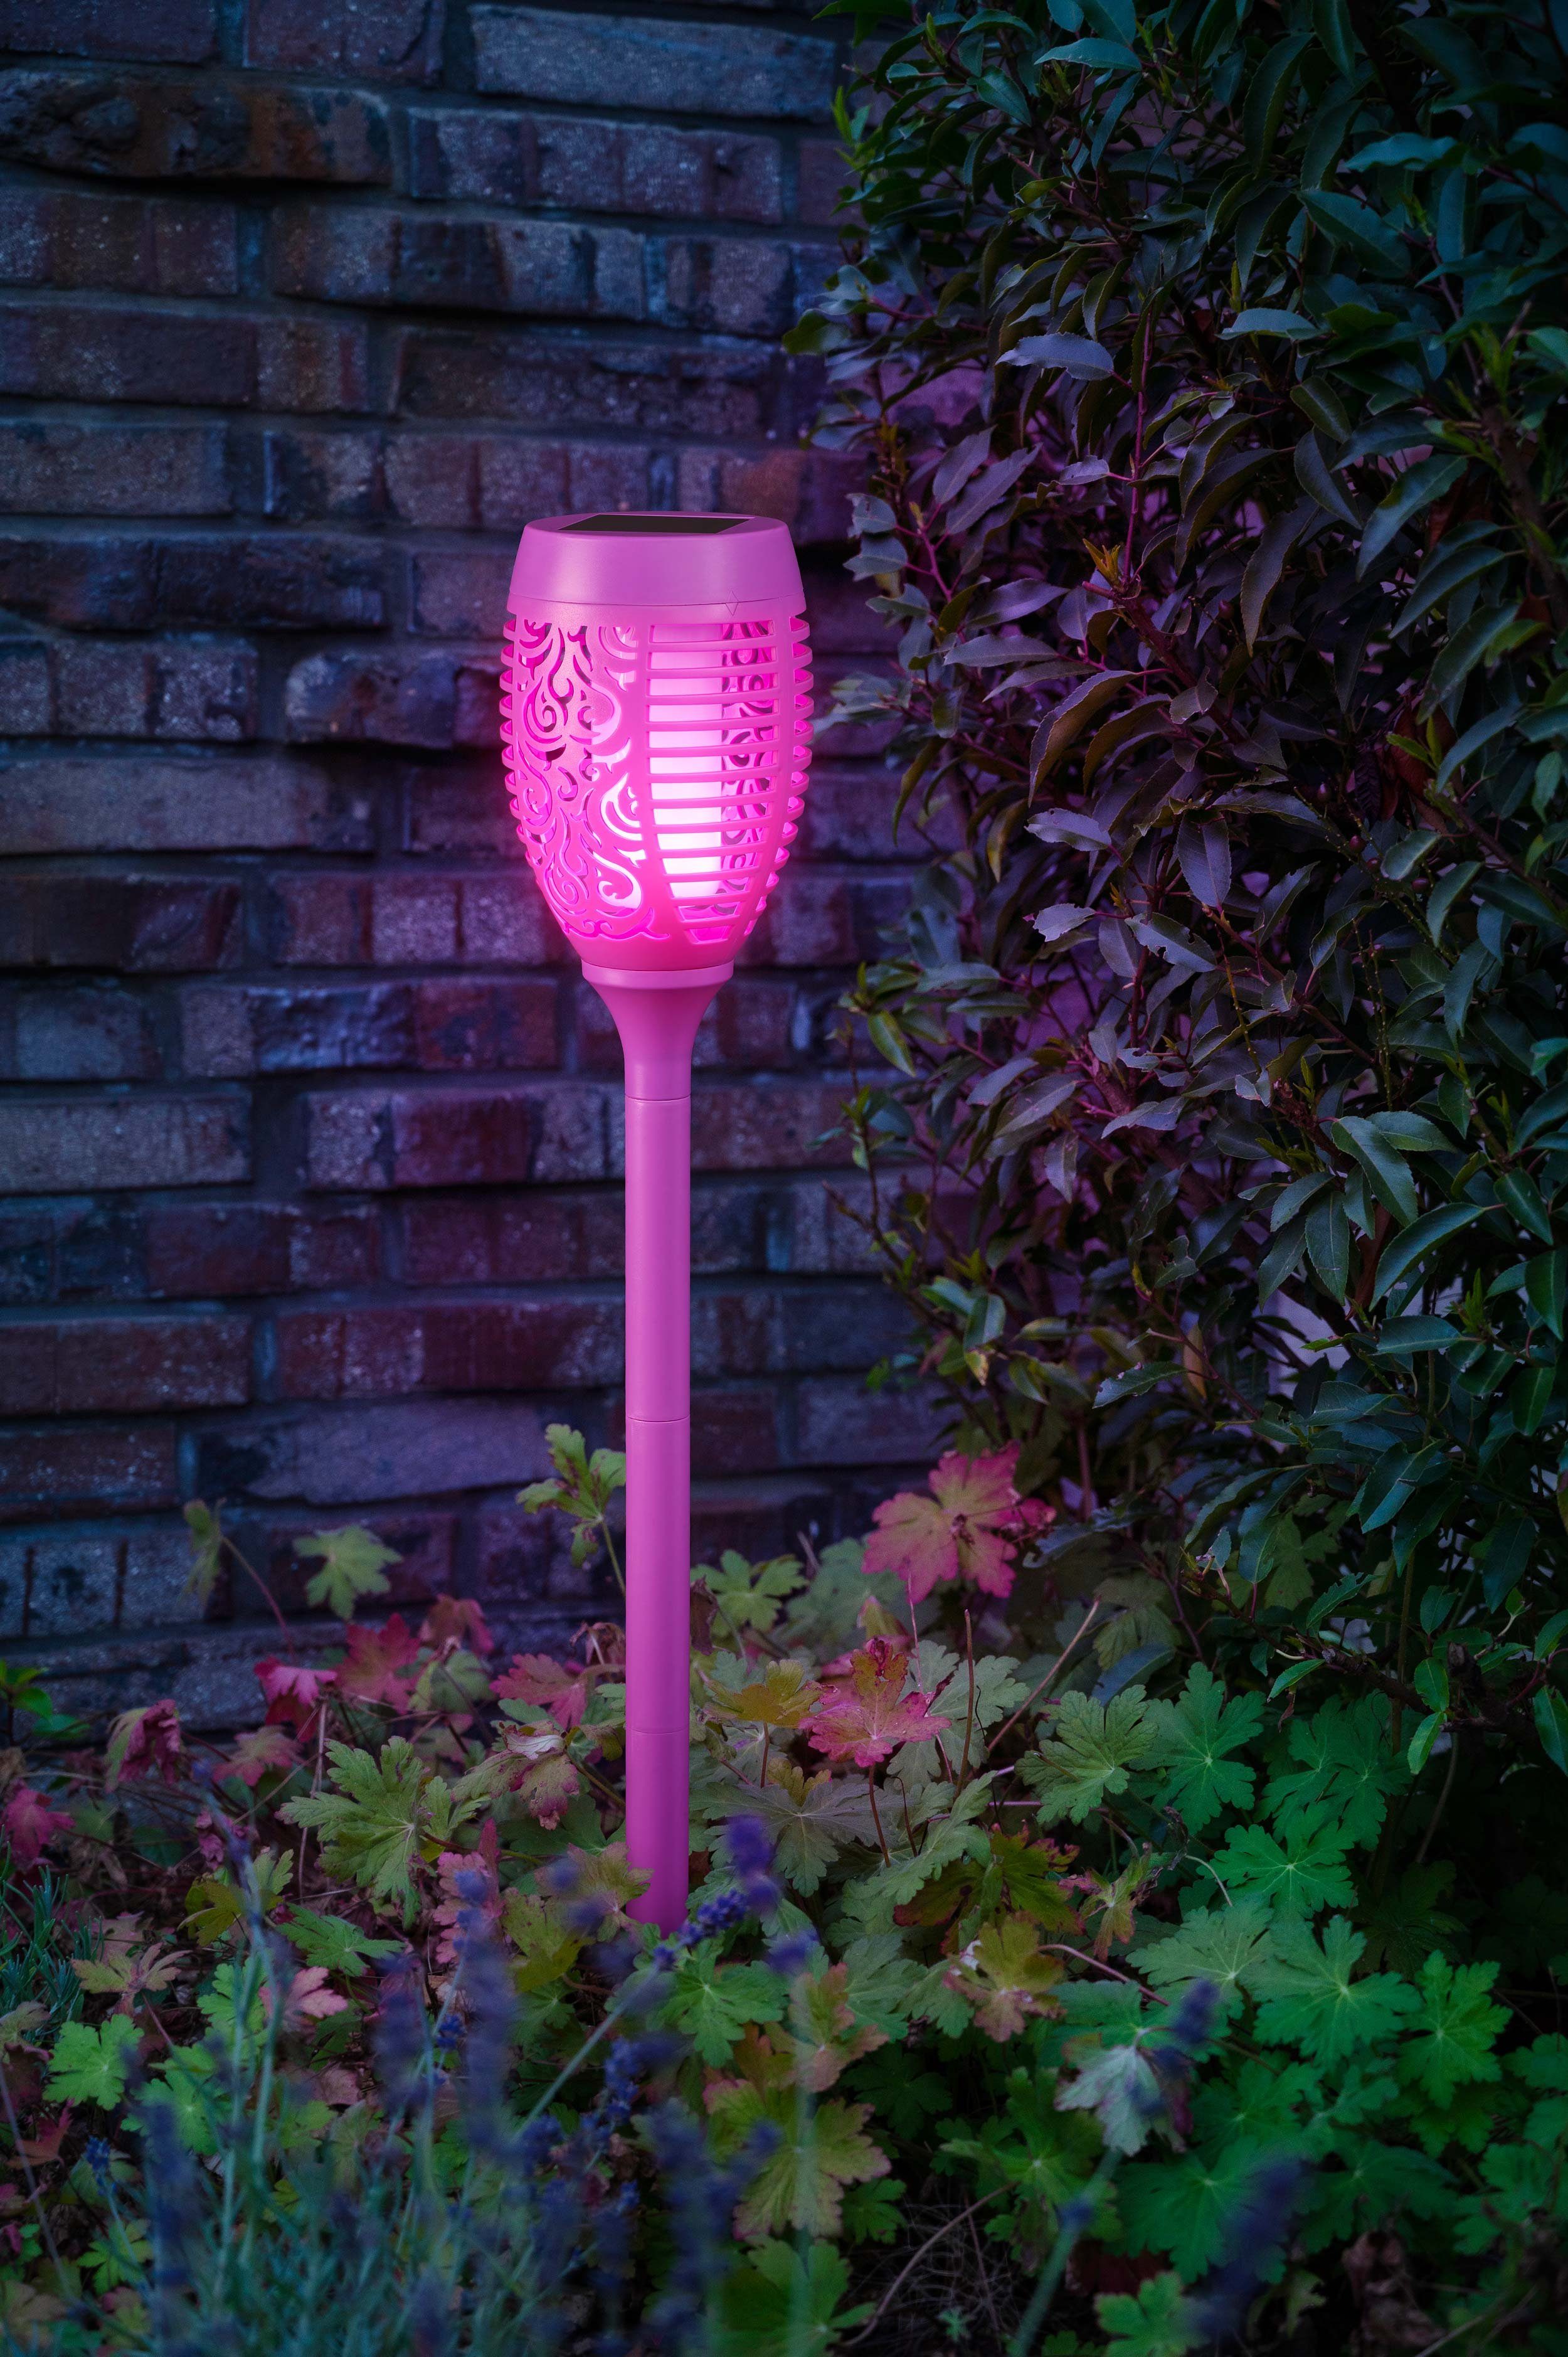 integriert, lila fest für wasserdicht, LED Außen, kamelshopping bunt, hoch, 72 bunt Gartenfackel Dämmerungssensor, ca. mit Flammeneffekt, LED Solarleuchten Gartenfackel cm bunte